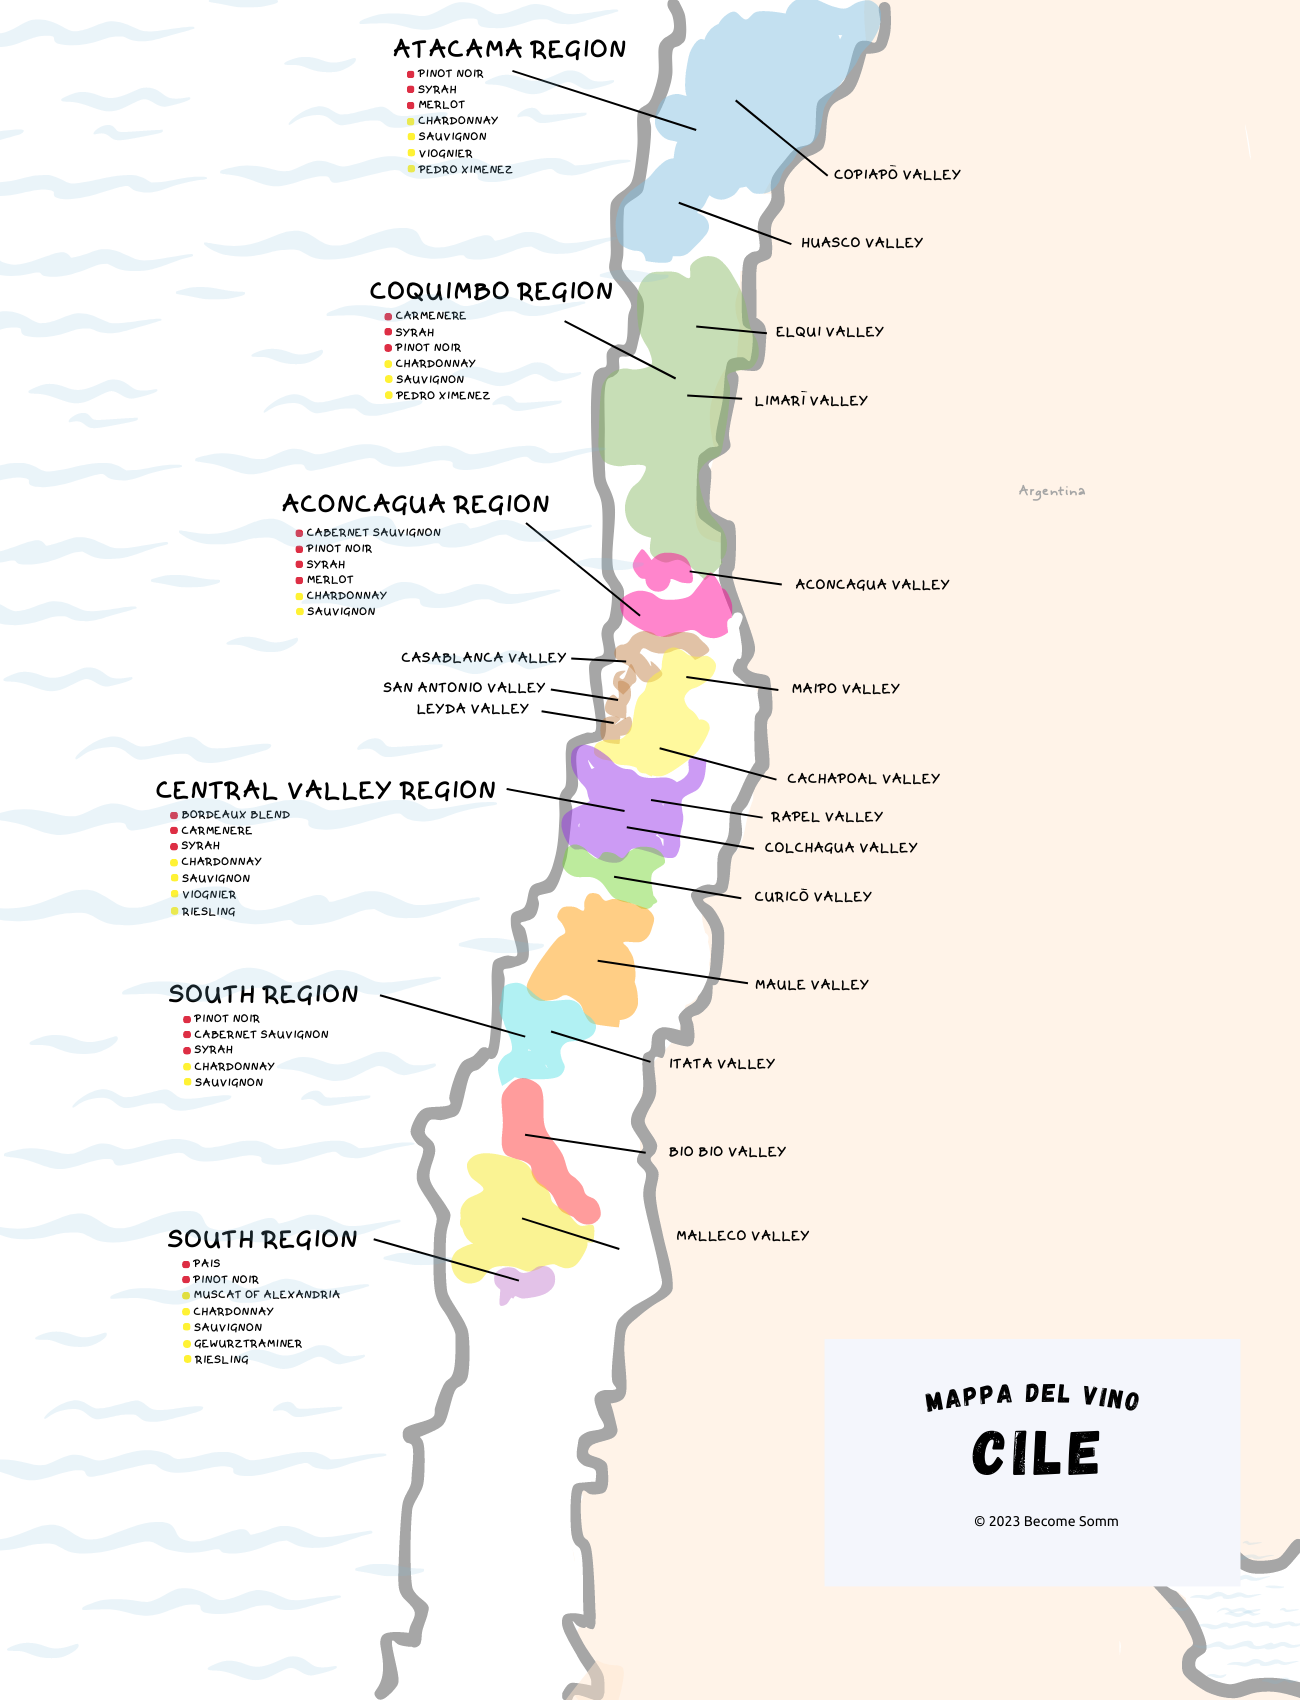 mapa del vino Chile Cile
Mappa del vino Cile
Wine Map Chile